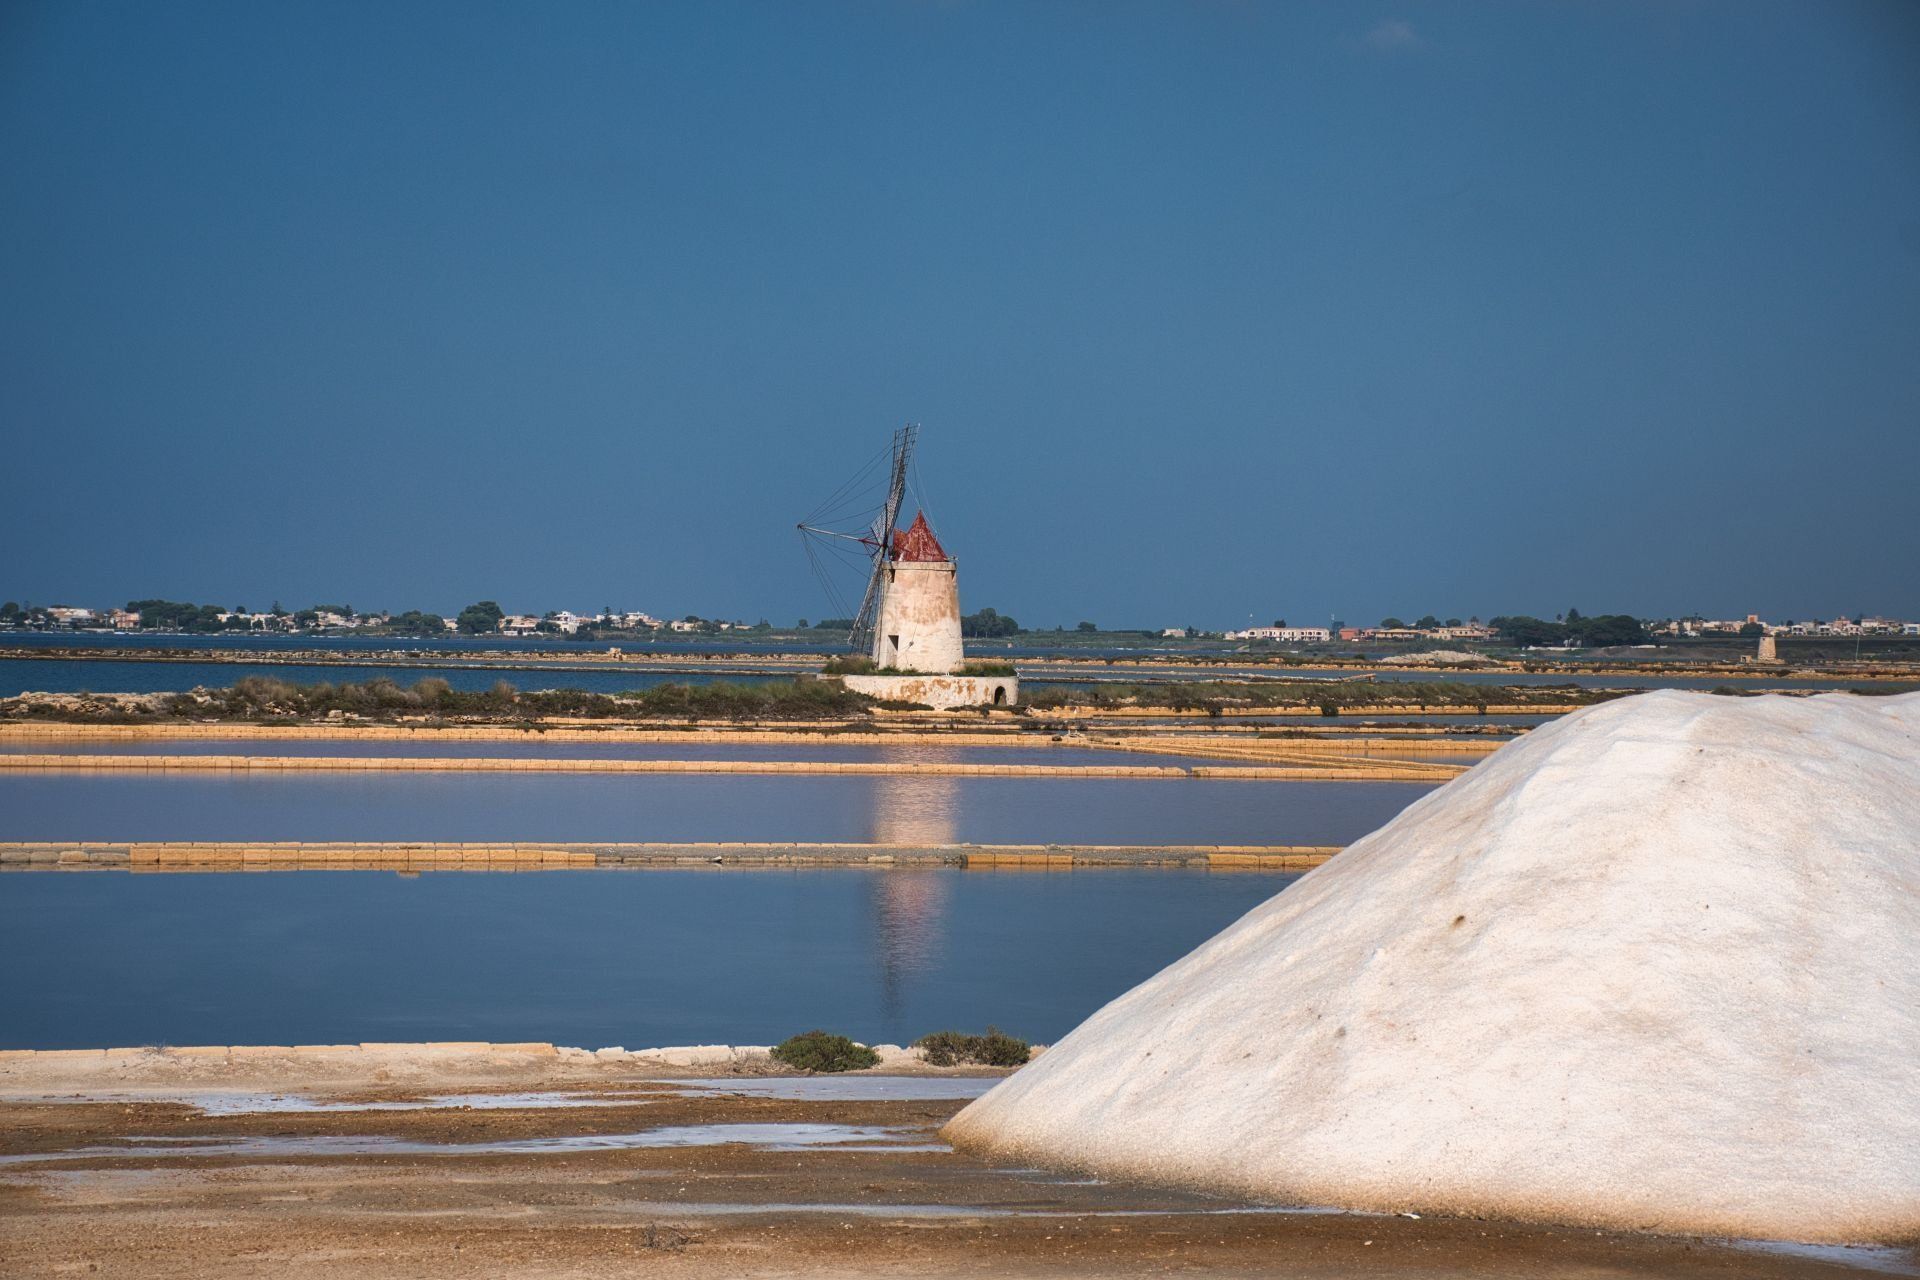 Salzgewinnung im Westen von Sizilien, das weisse Gold